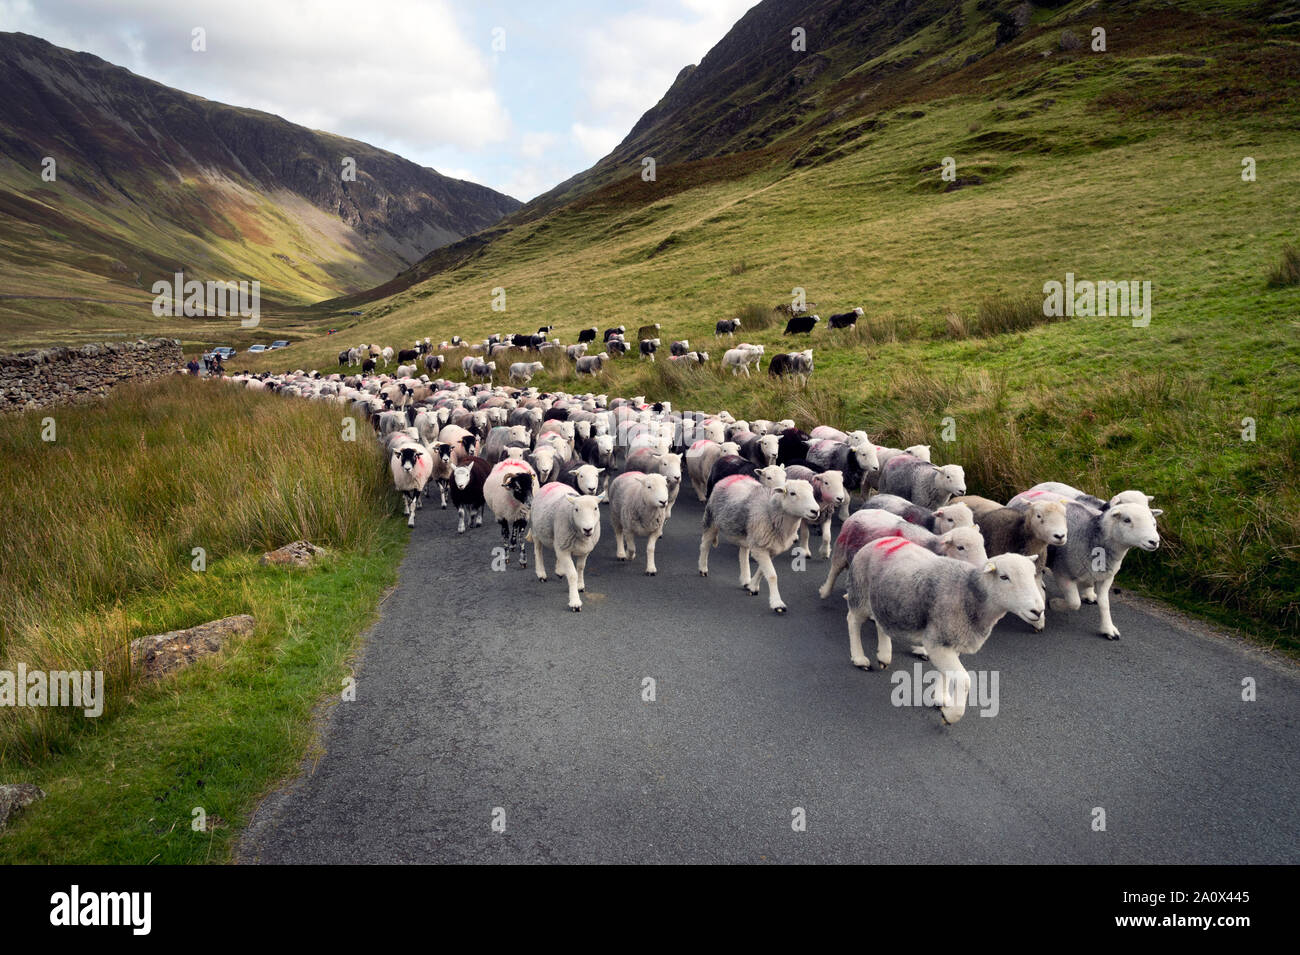 Ein fiel - Versammlung der Schafe in der honister Pass, den Lake District, England. Herdwick-schafe sind entlang der Straße gefahren. Stockfoto